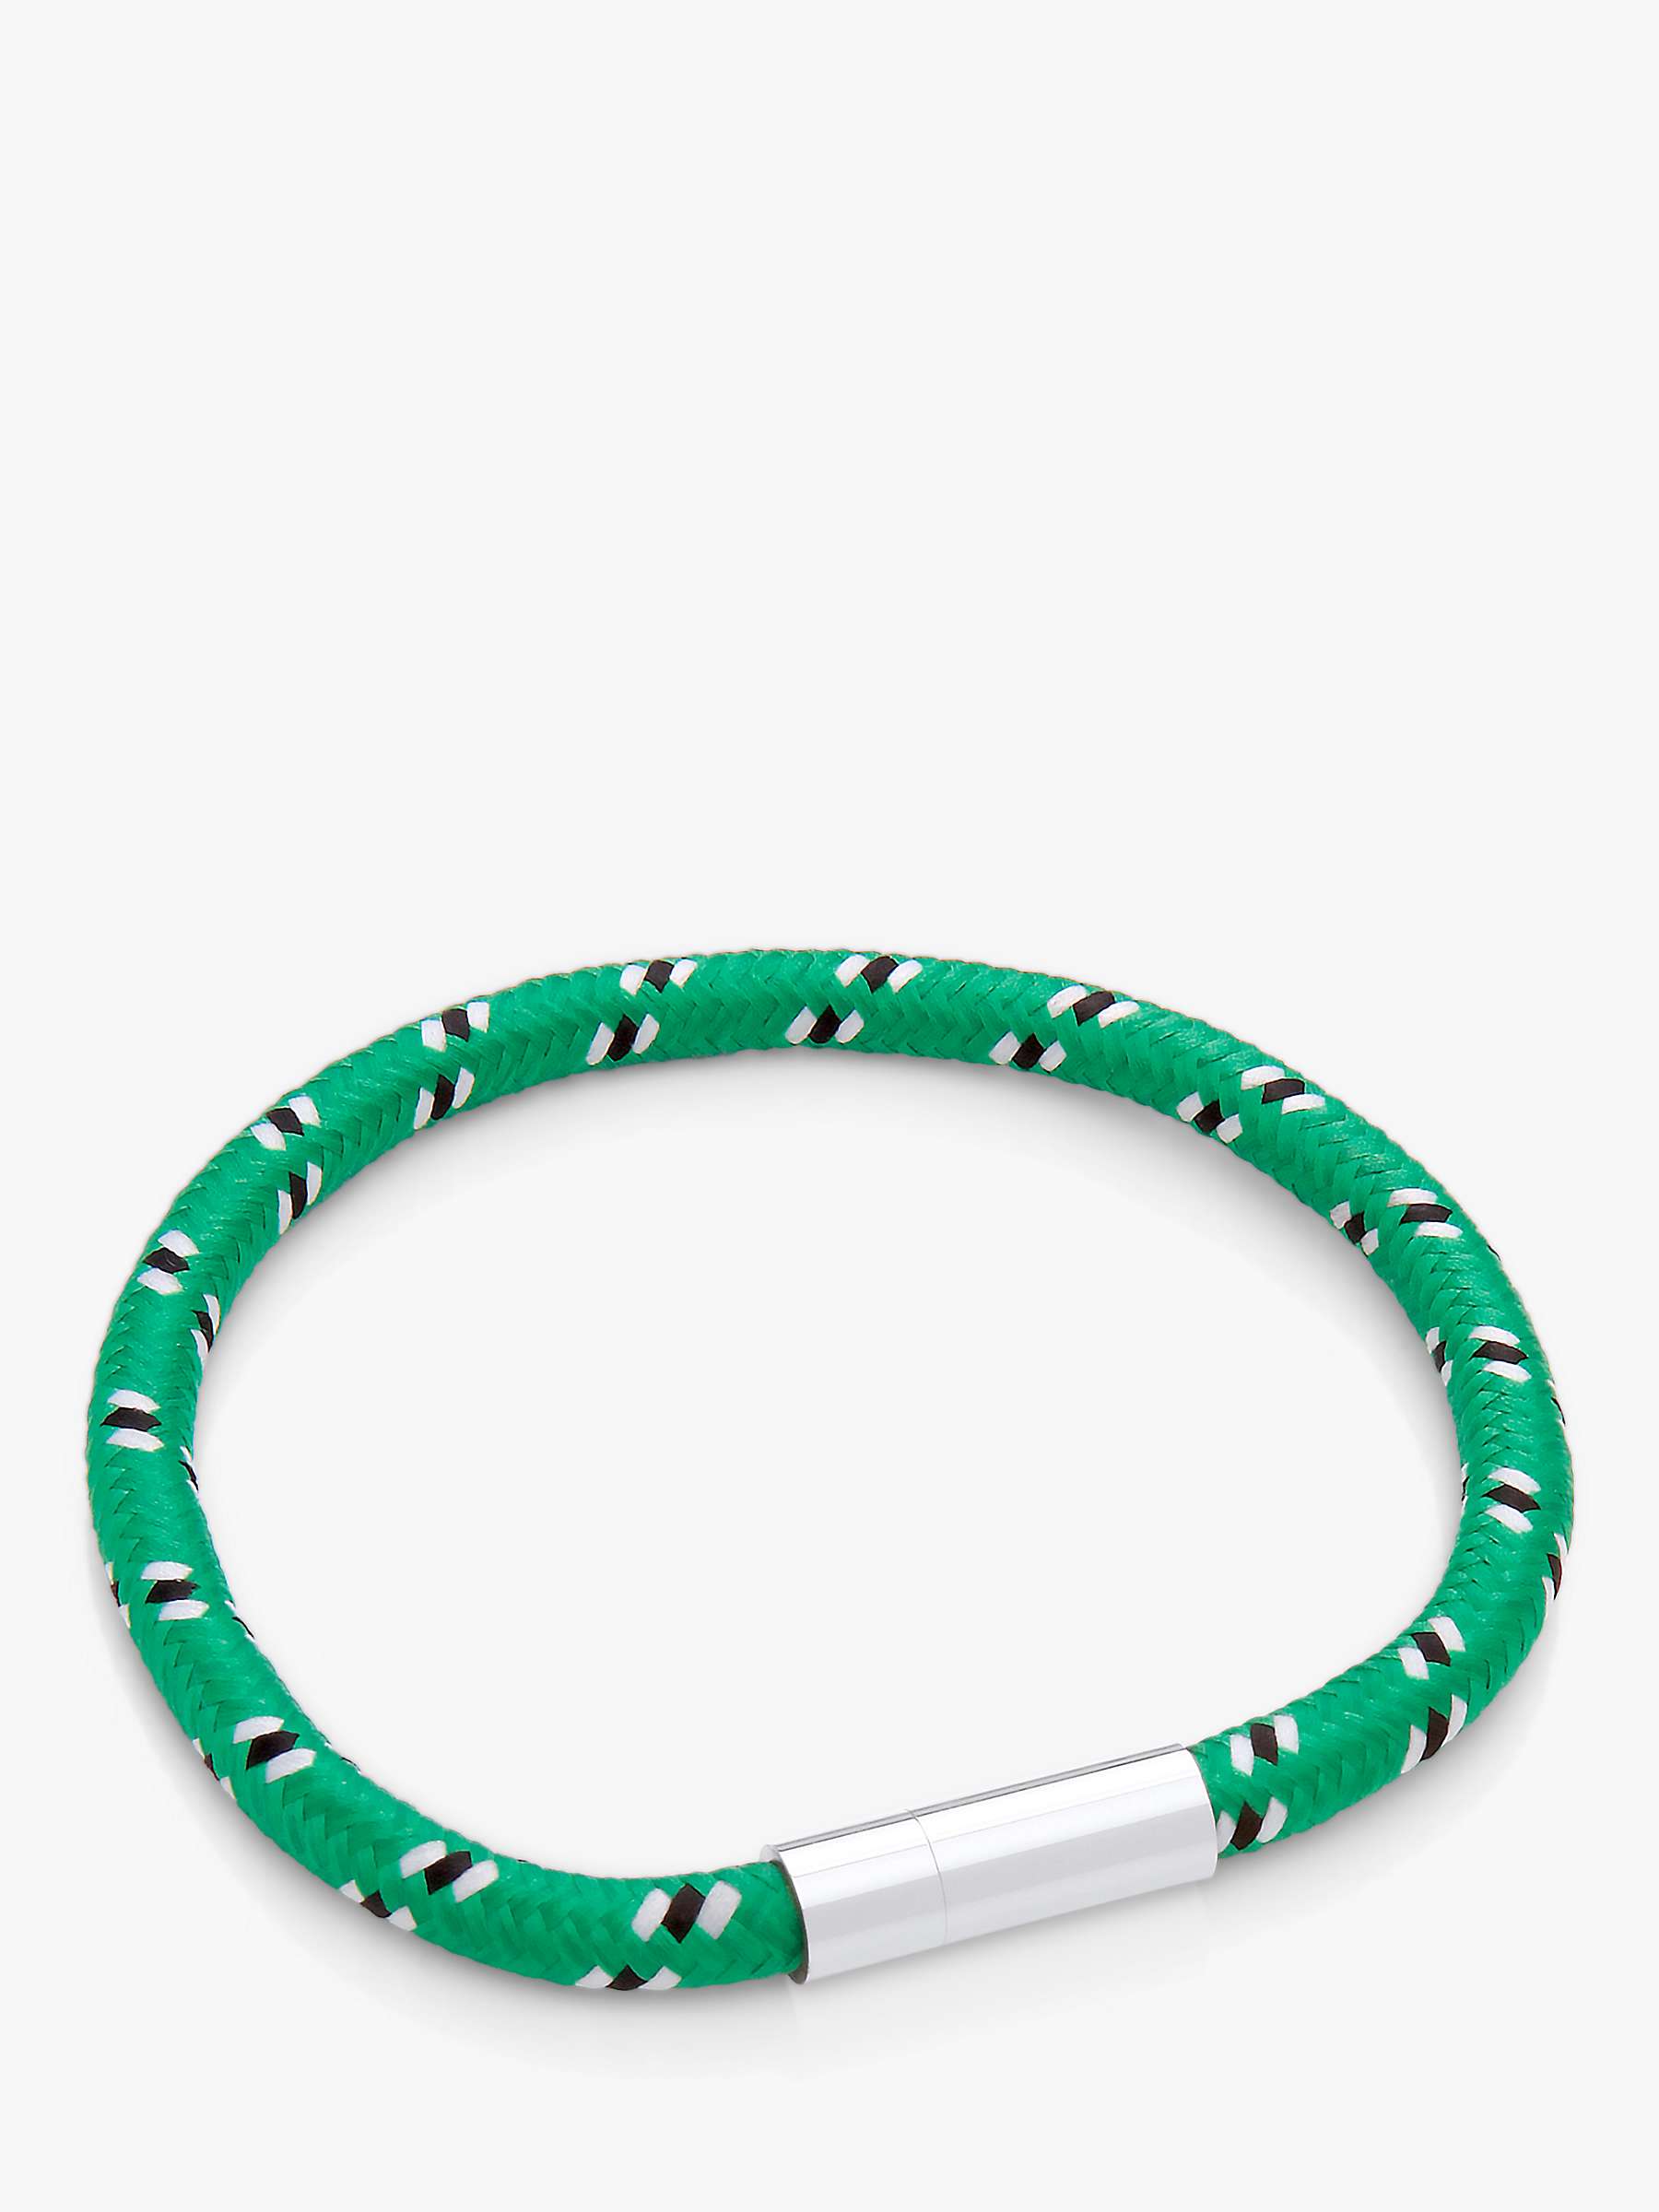 Buy BARTLETT LONDON Men's Corded Bracelet Online at johnlewis.com